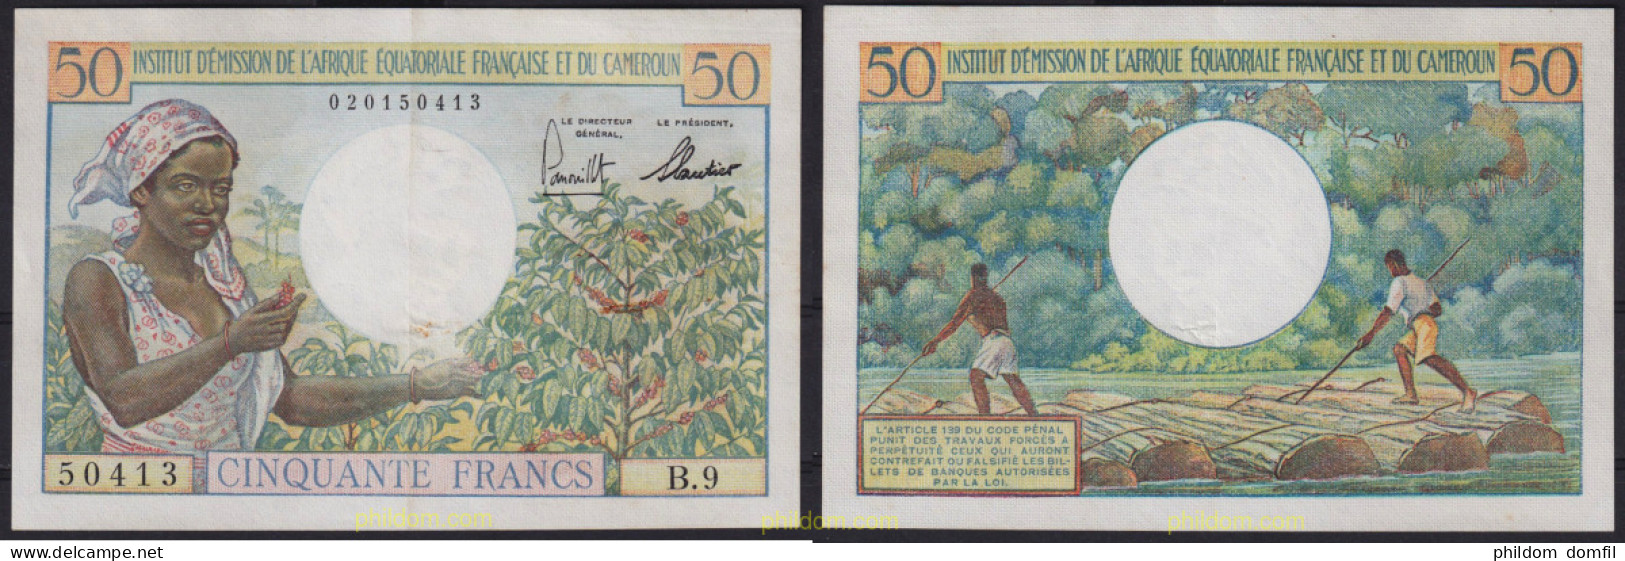 6401 CAMERUN 1957 CAMERUN 1957 50 FRANCS - Cameroon